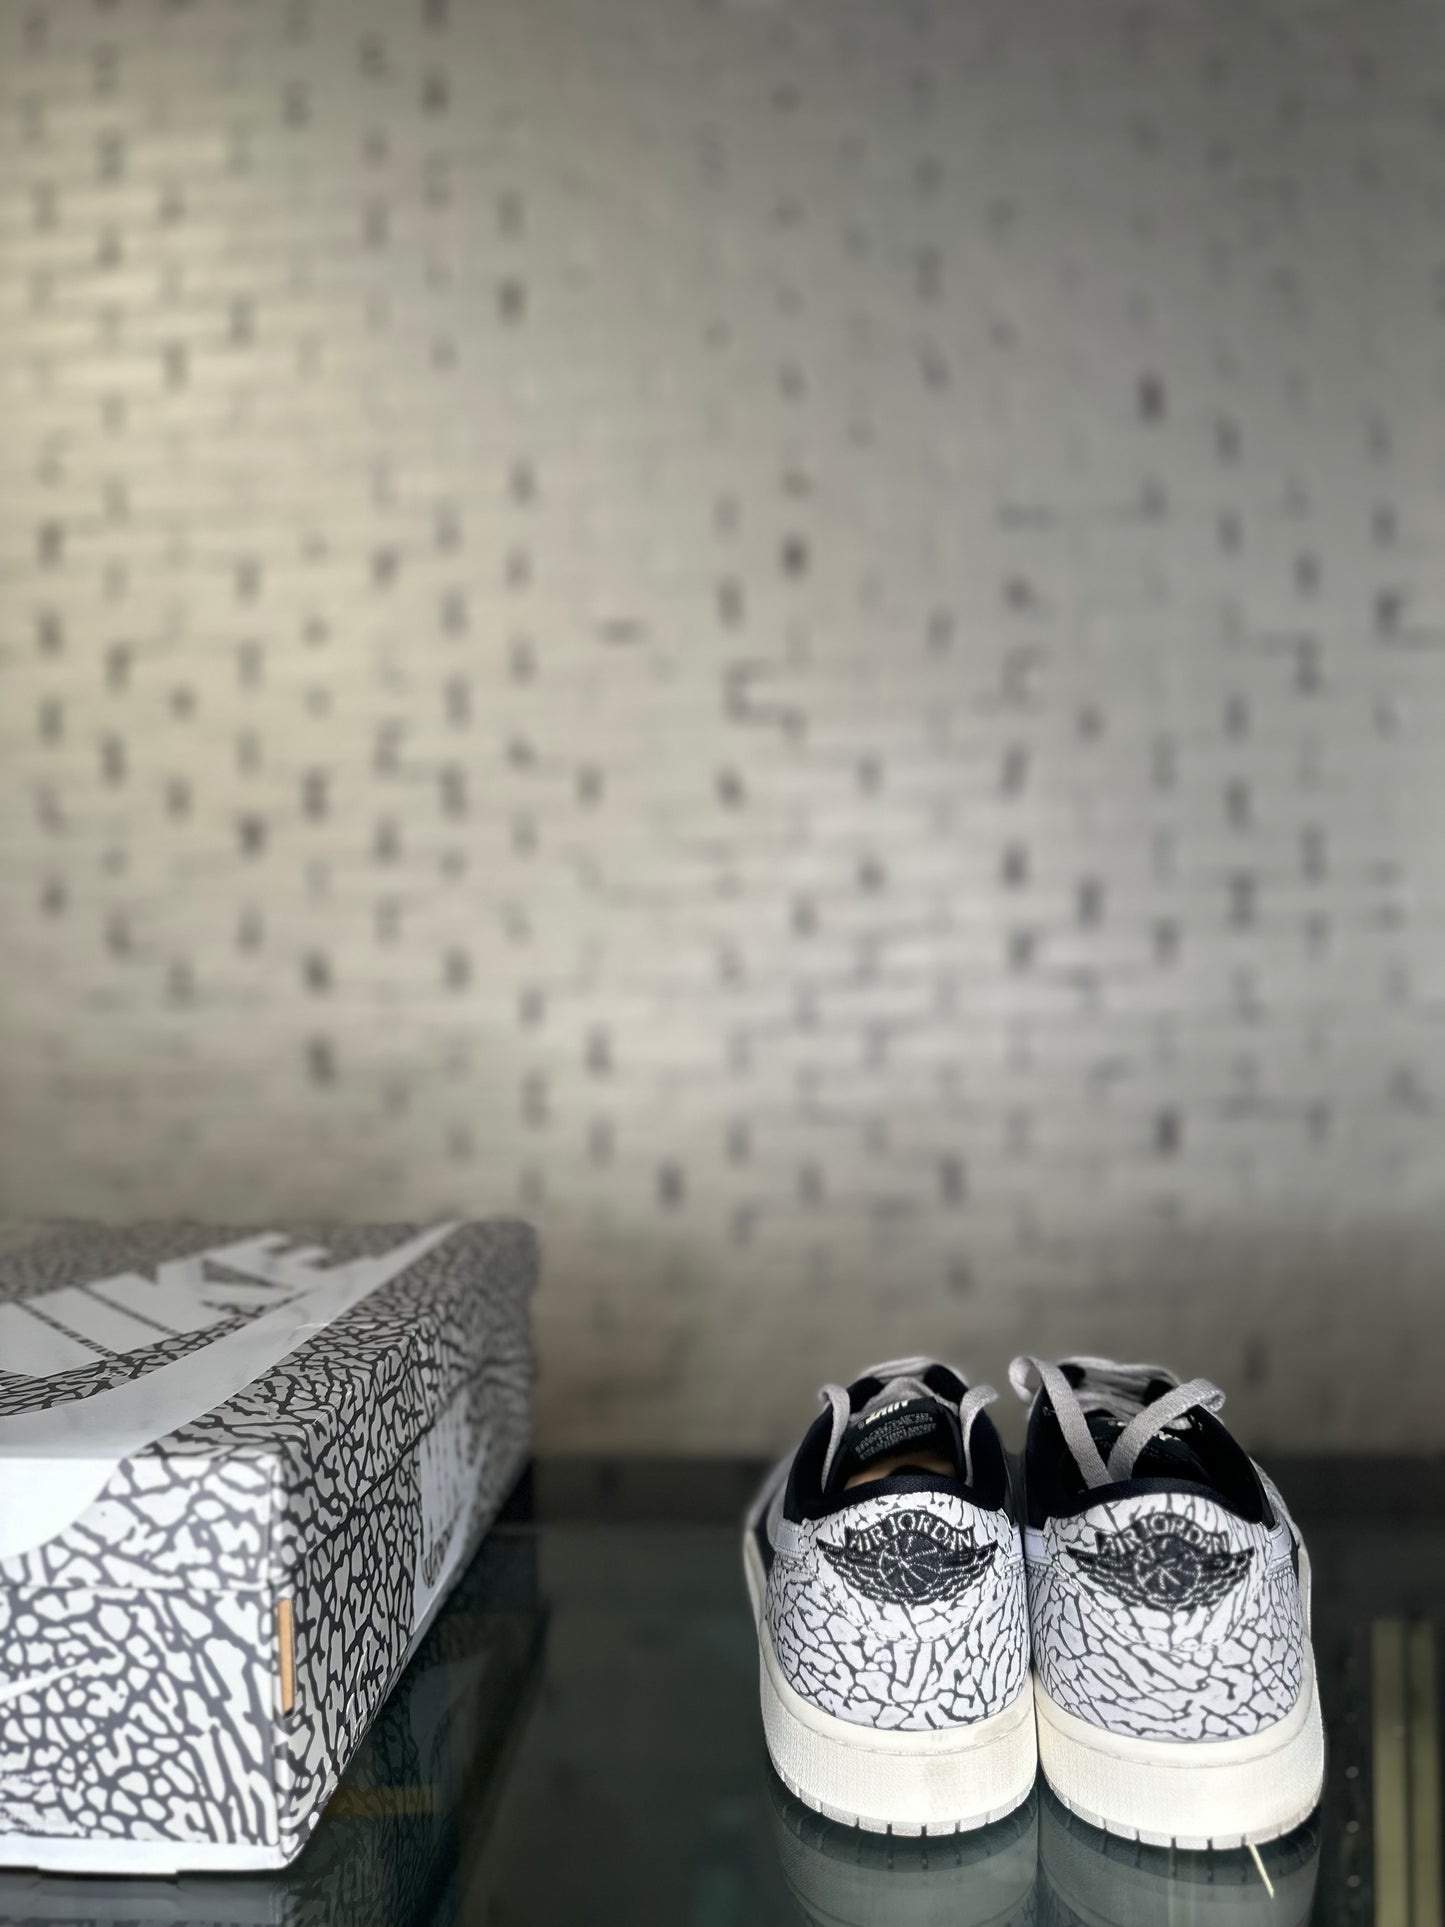 Air Jordan 1 Low OG “Black/Cement” Size 10.5 VNDS OG